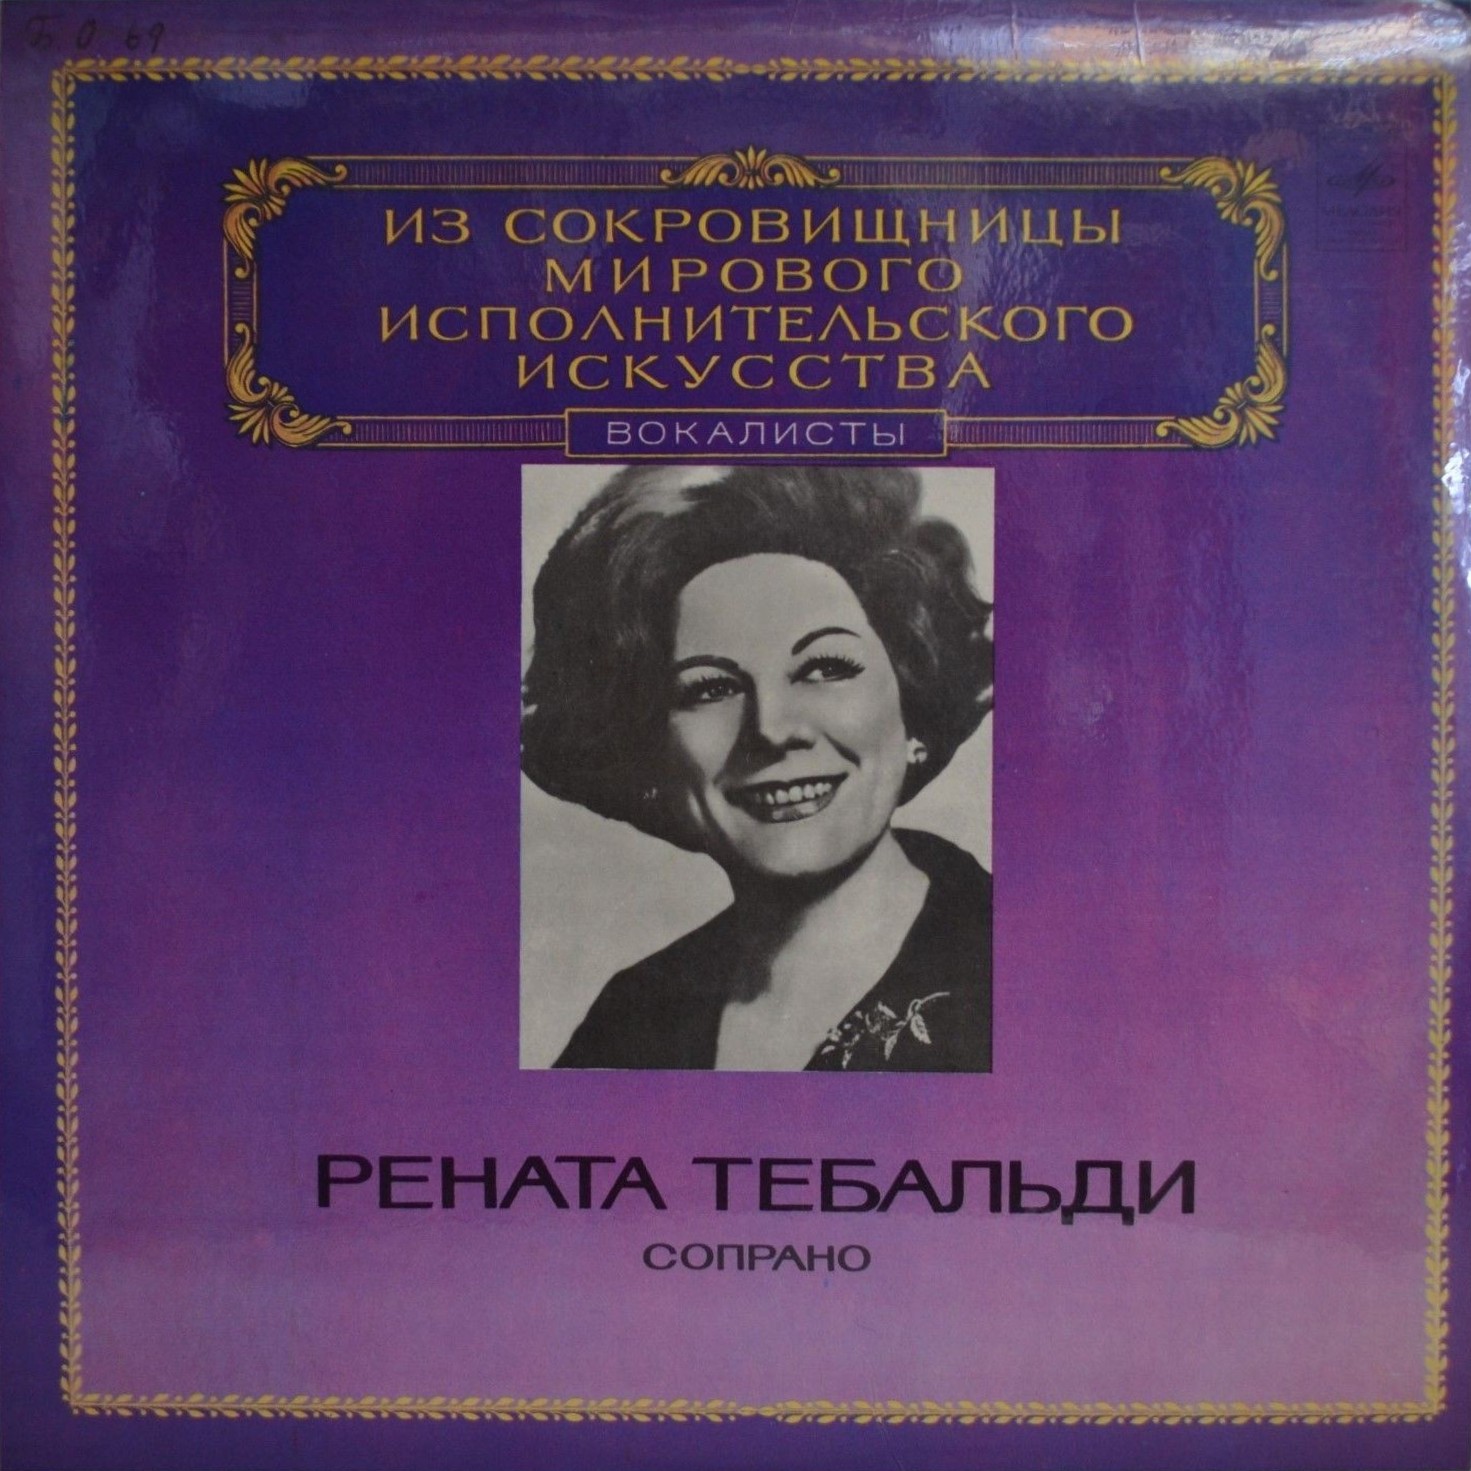 Рената Тебальди (сопрано)